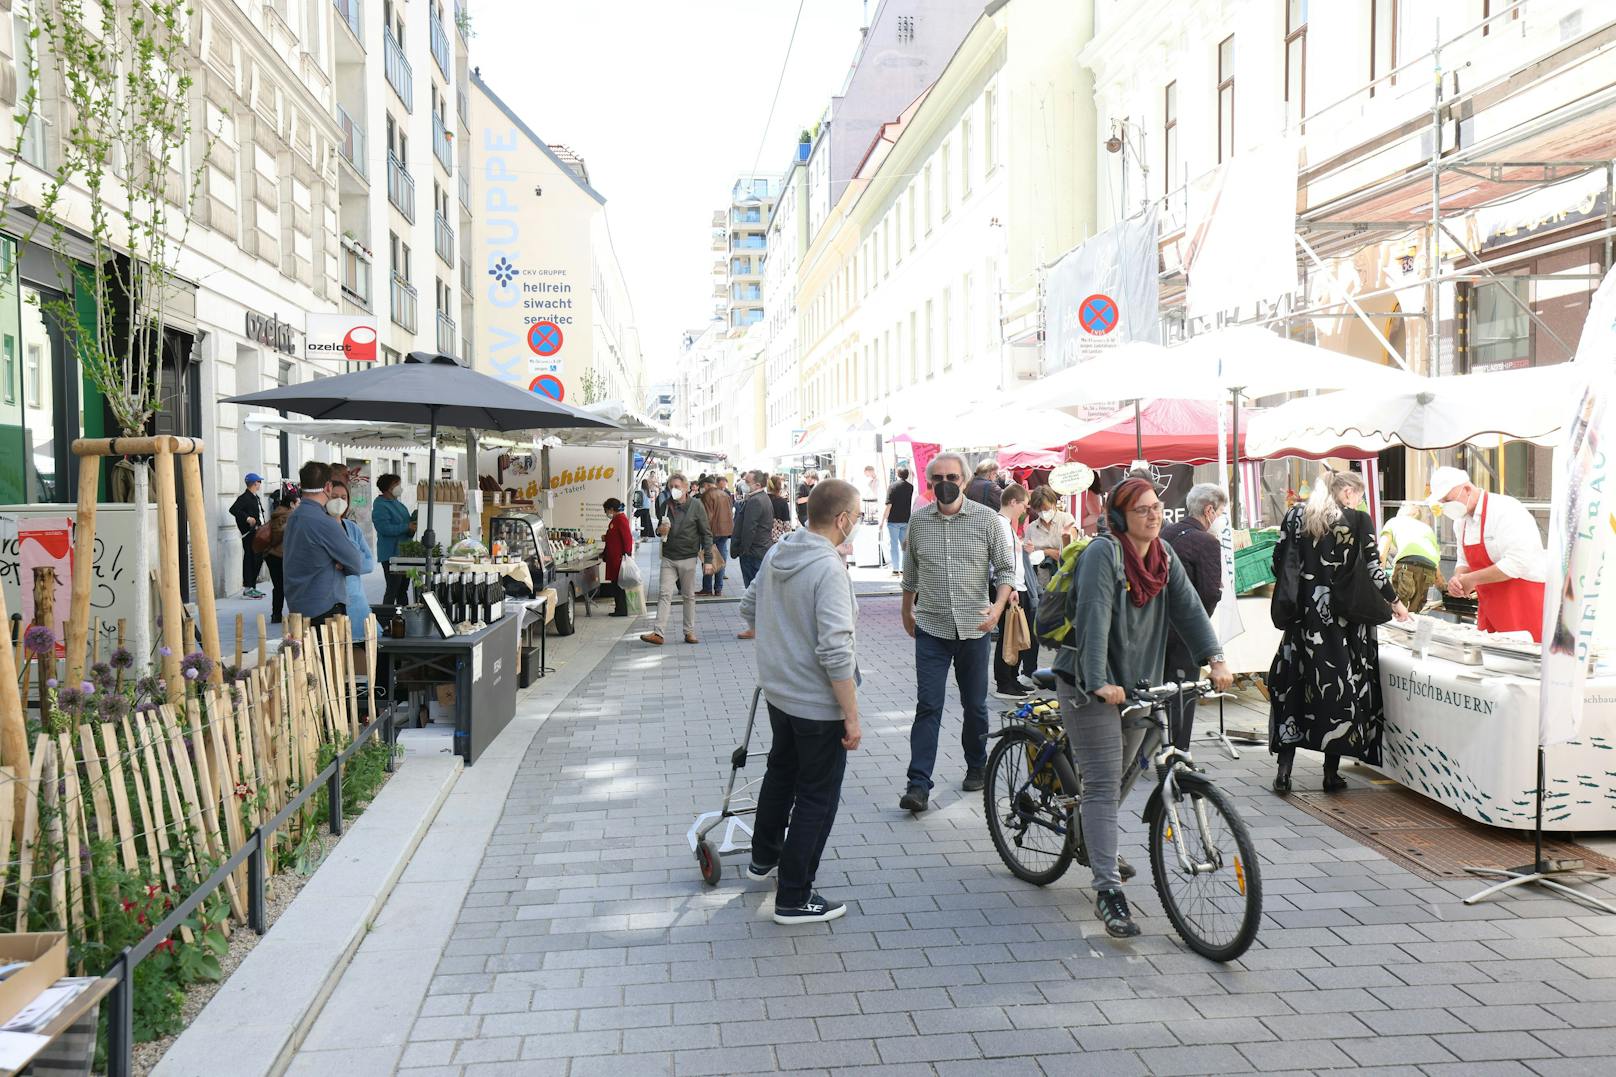 Der Markt ist ab sofort jeden Mittwoch von 11 bis 20 Uhr geöffnet. Als Rahmenprogramm sind Straßenkunst, Wiener Lied und chilliger Jazz geplant.<br>